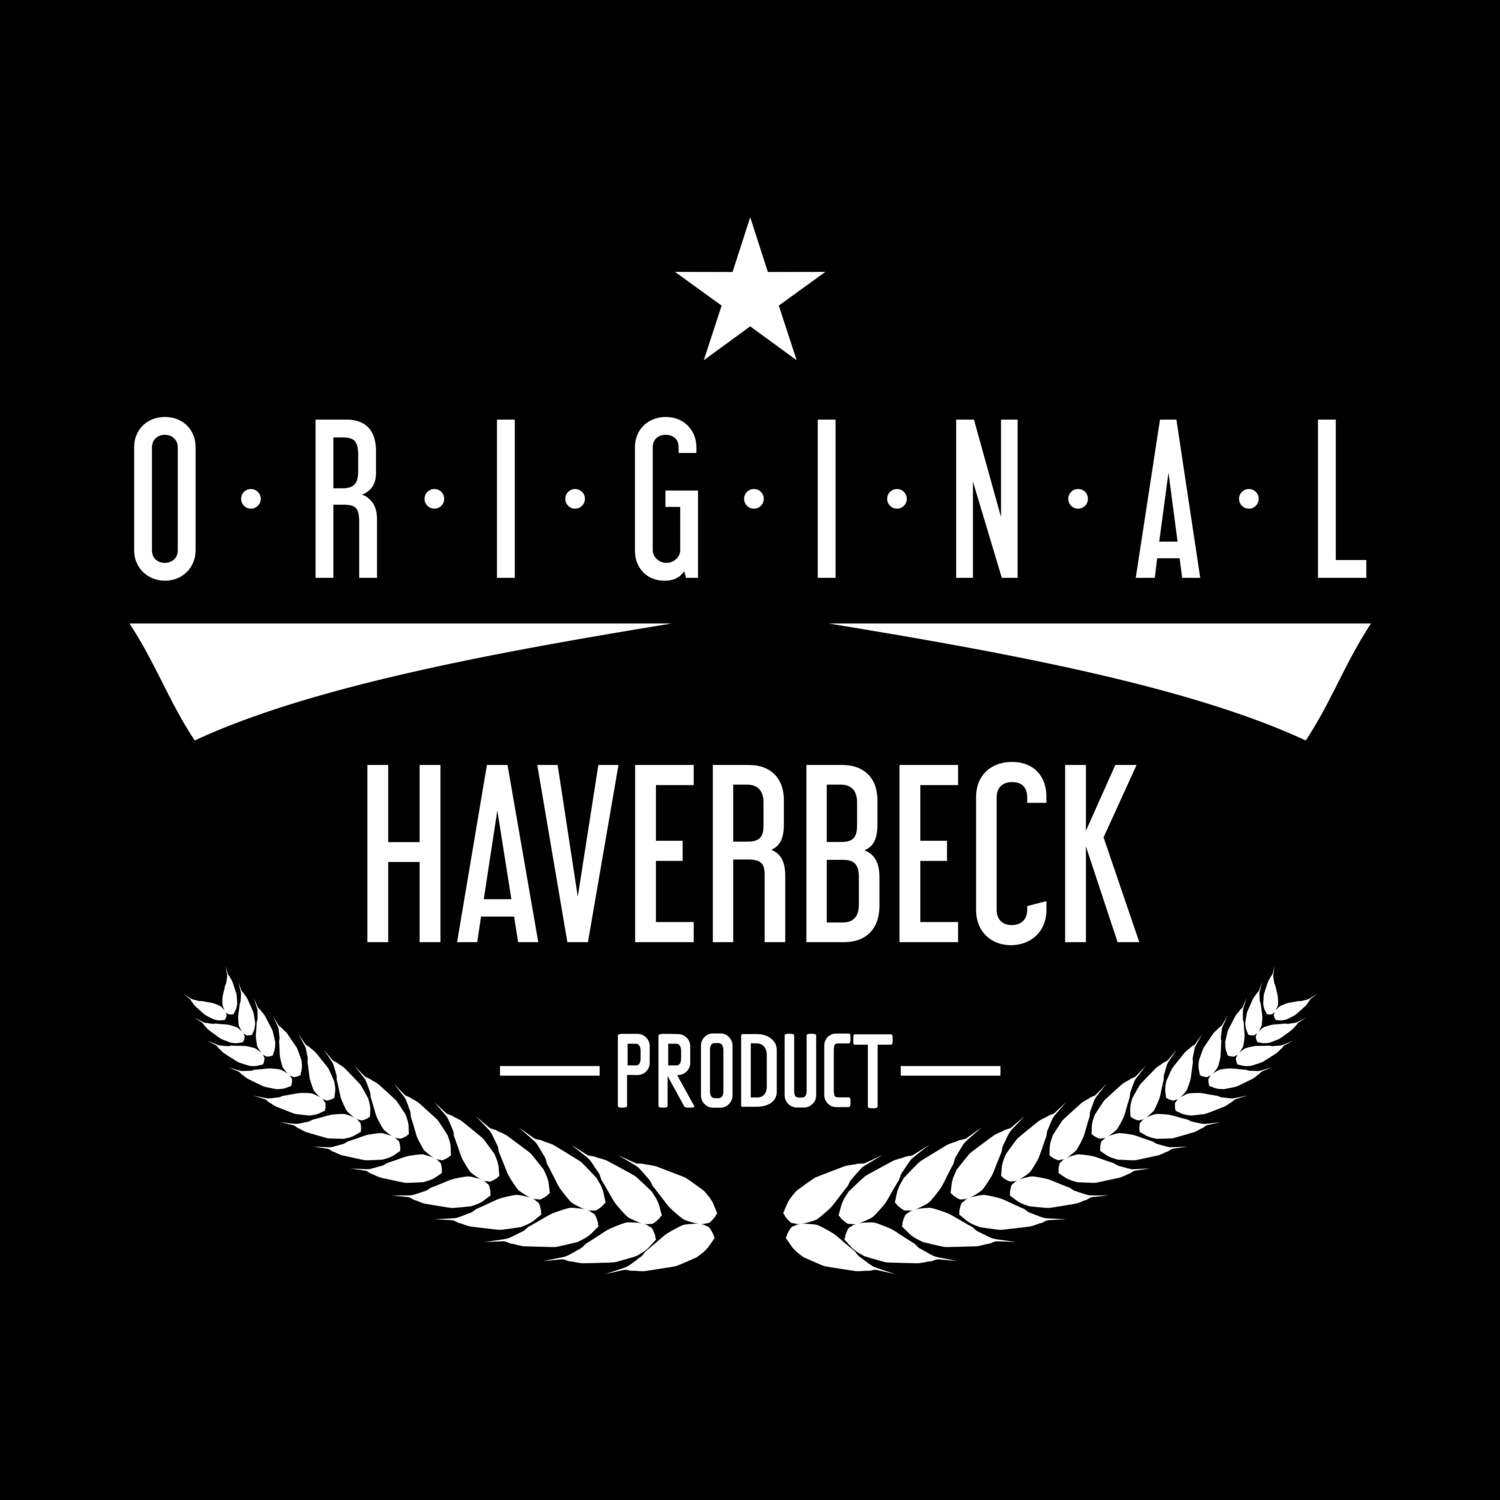 Haverbeck T-Shirt »Original Product«